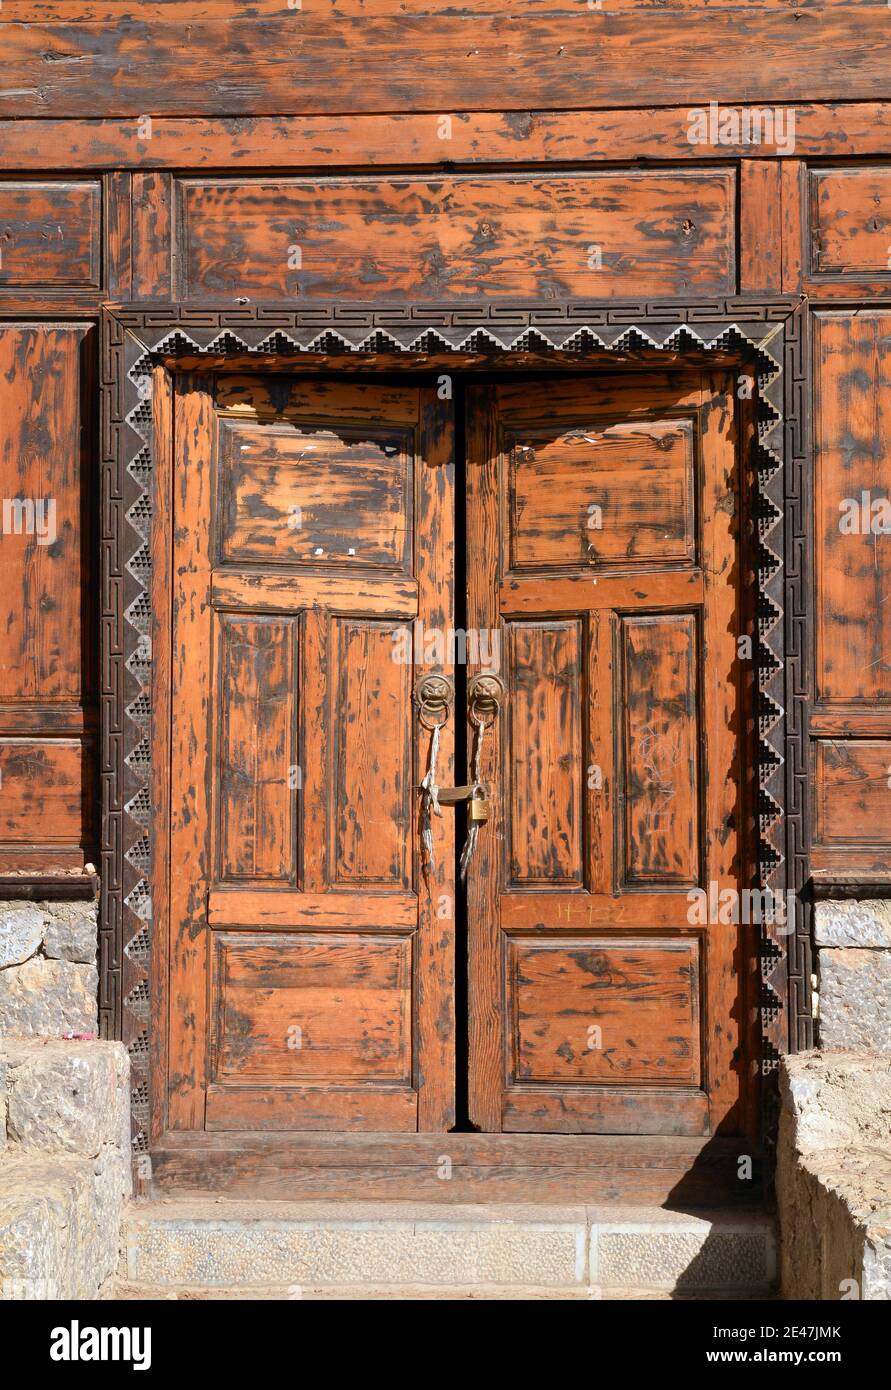 Gemeinsames Design der Architektur in Shangri La Region Yunnan. Diese Art der Tür kann überall gefunden werden Stockfoto